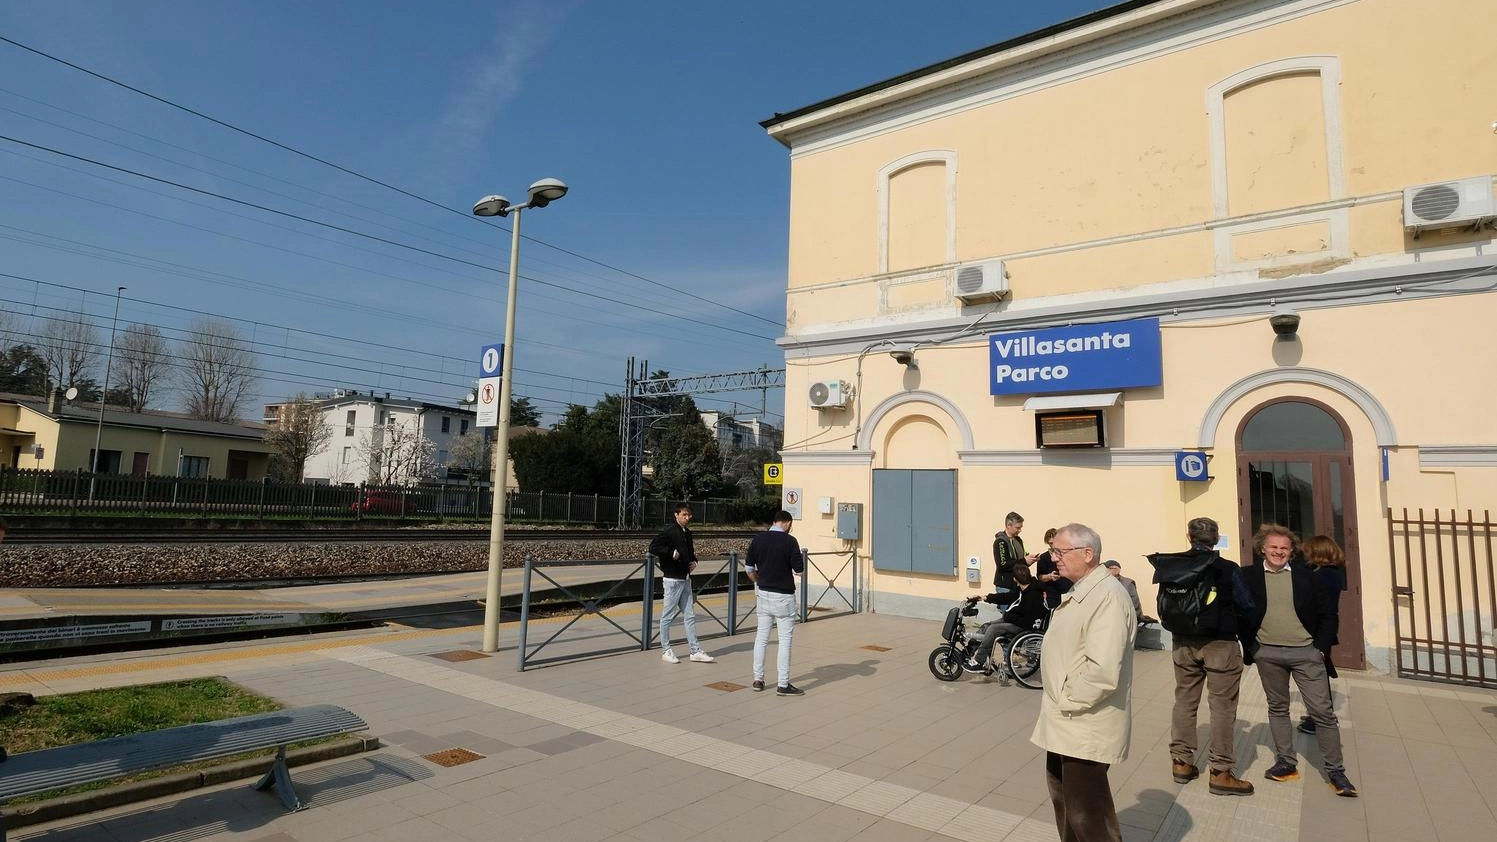 No alla stazione Monza Est: "Diamo i soldi a Villasanta"